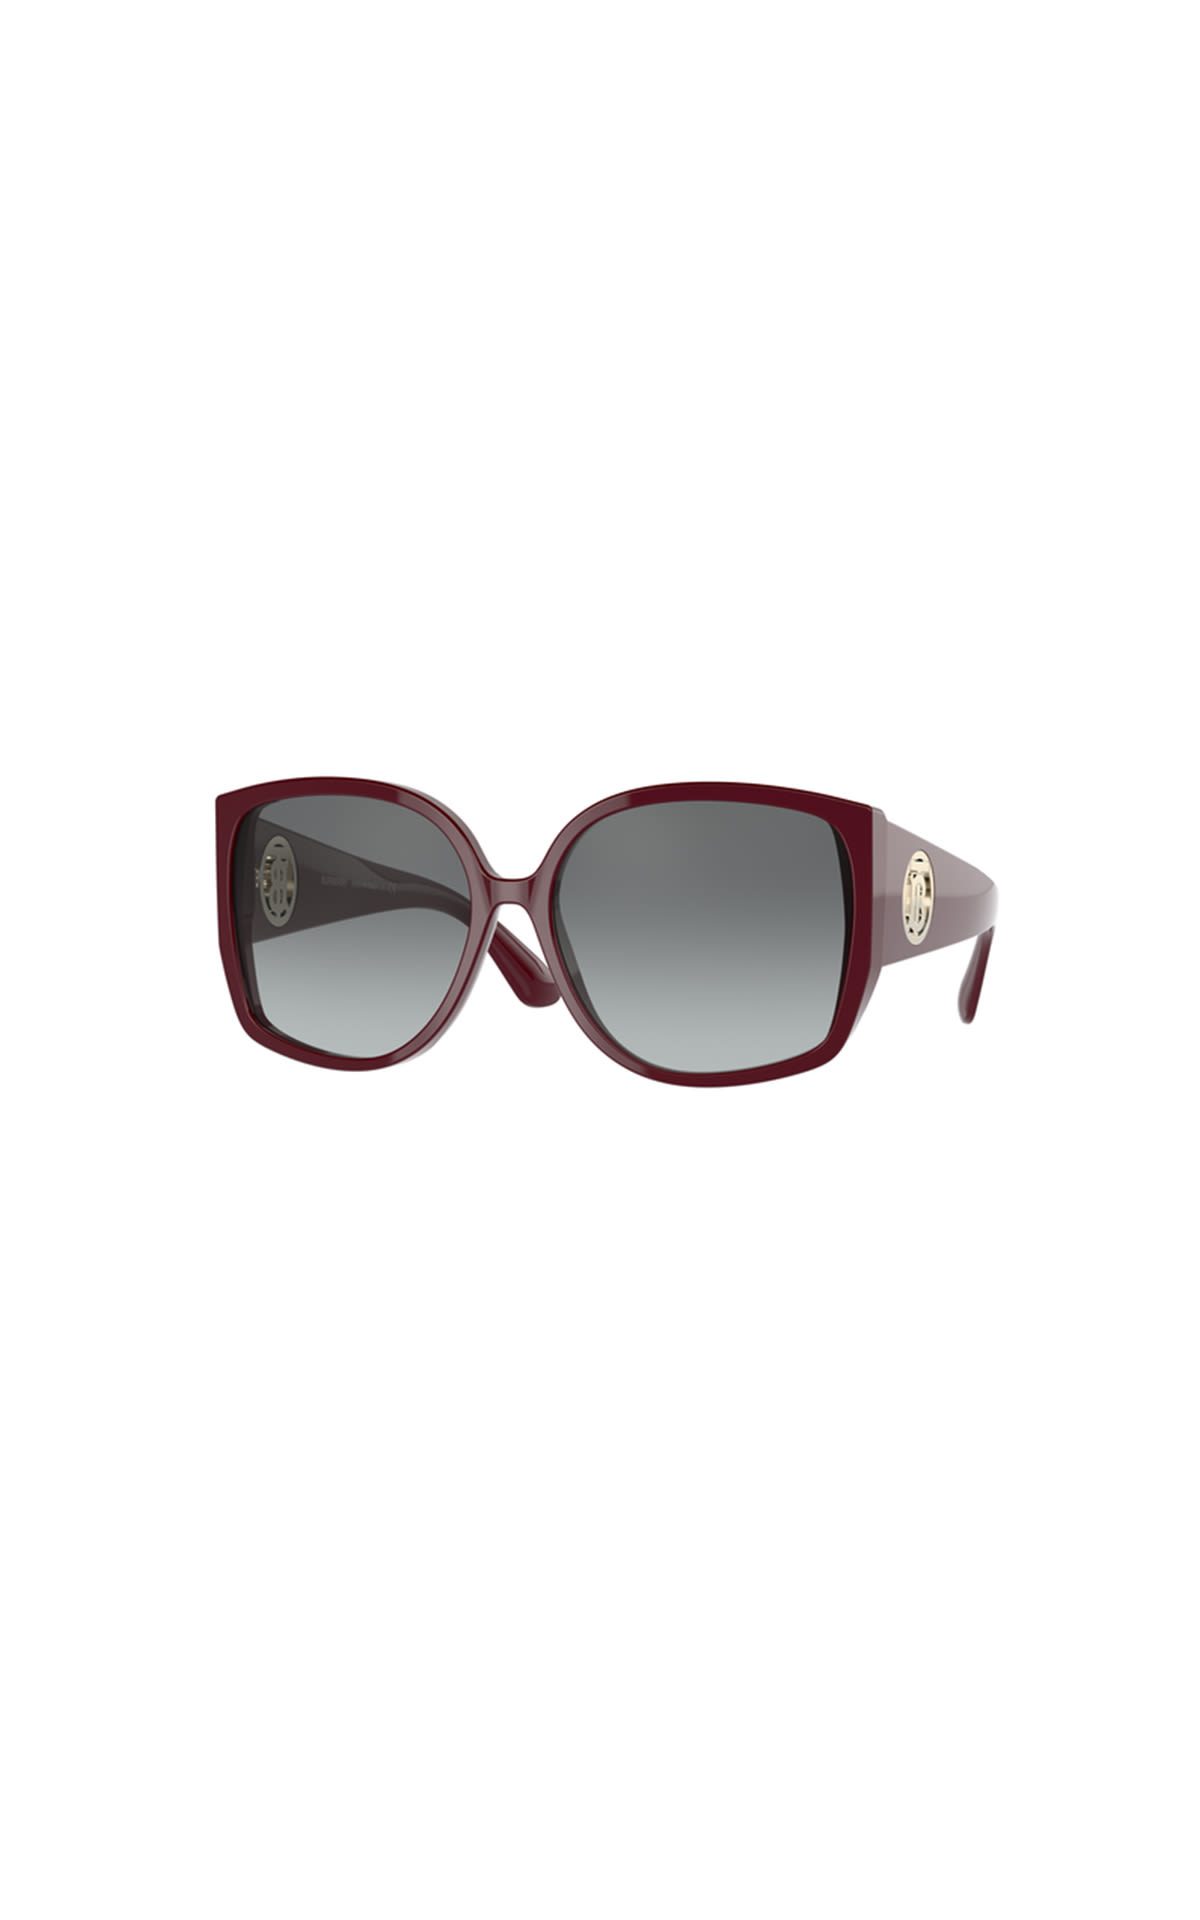 Maroon sunglasses for women SunglassHut